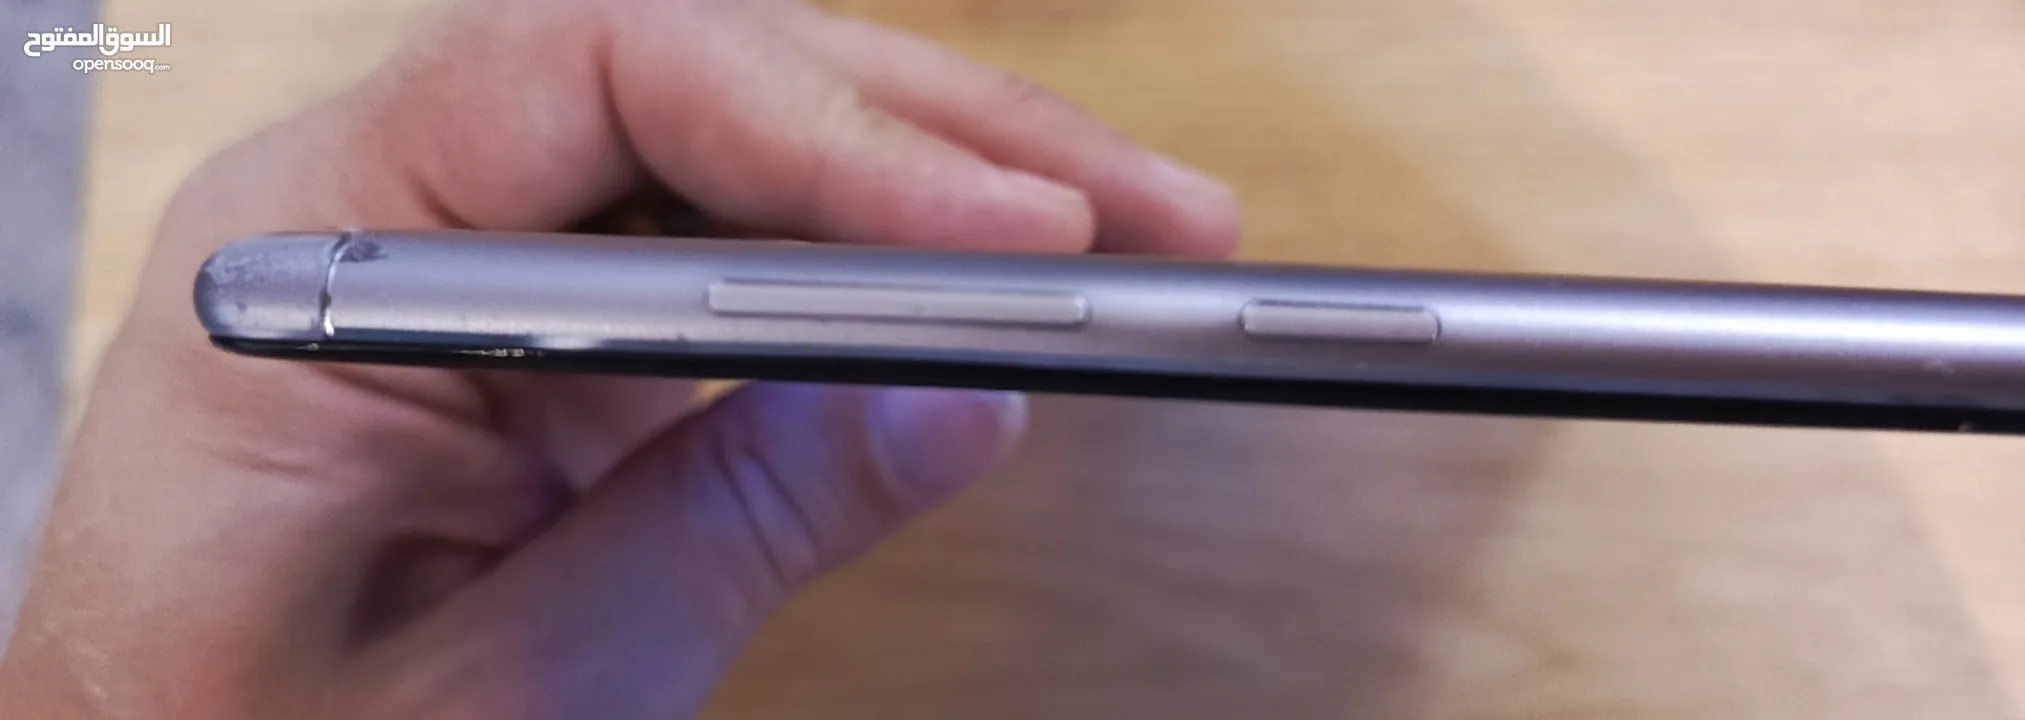 Tablet Huawei M5 Lite 10 SIM